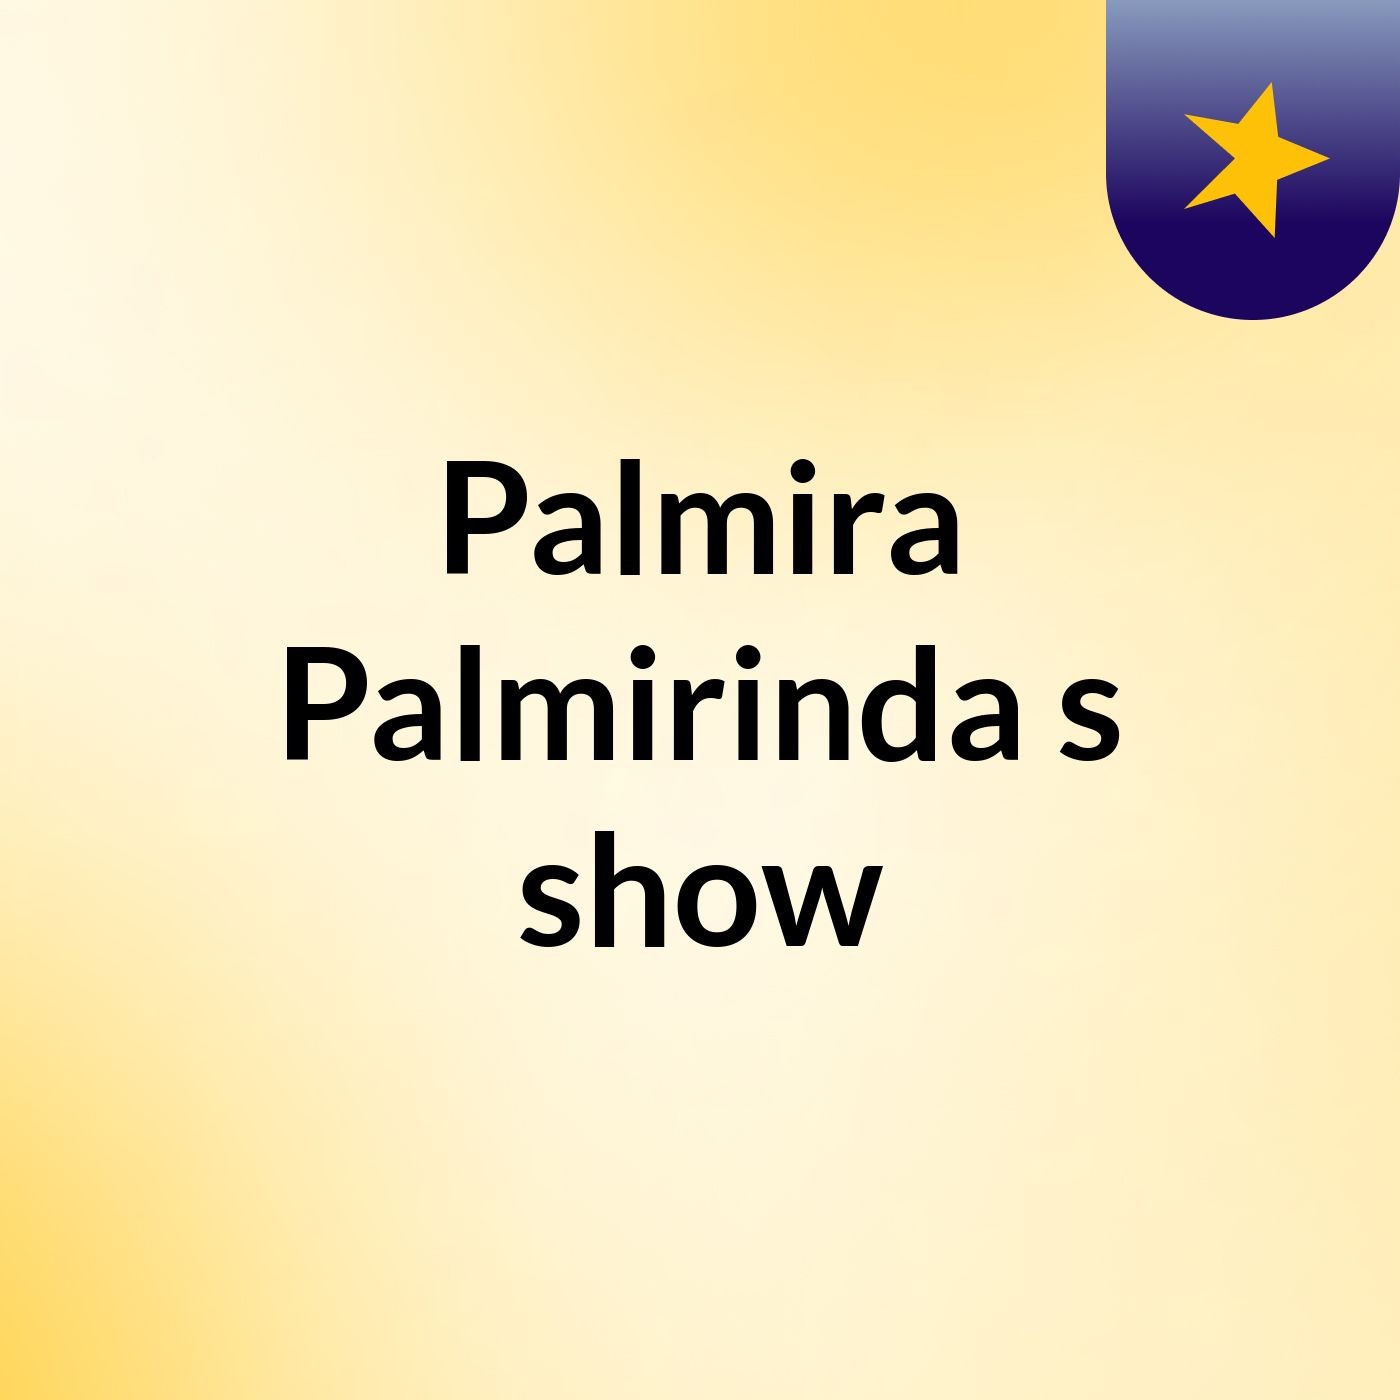 Palmira Palmirinda's show